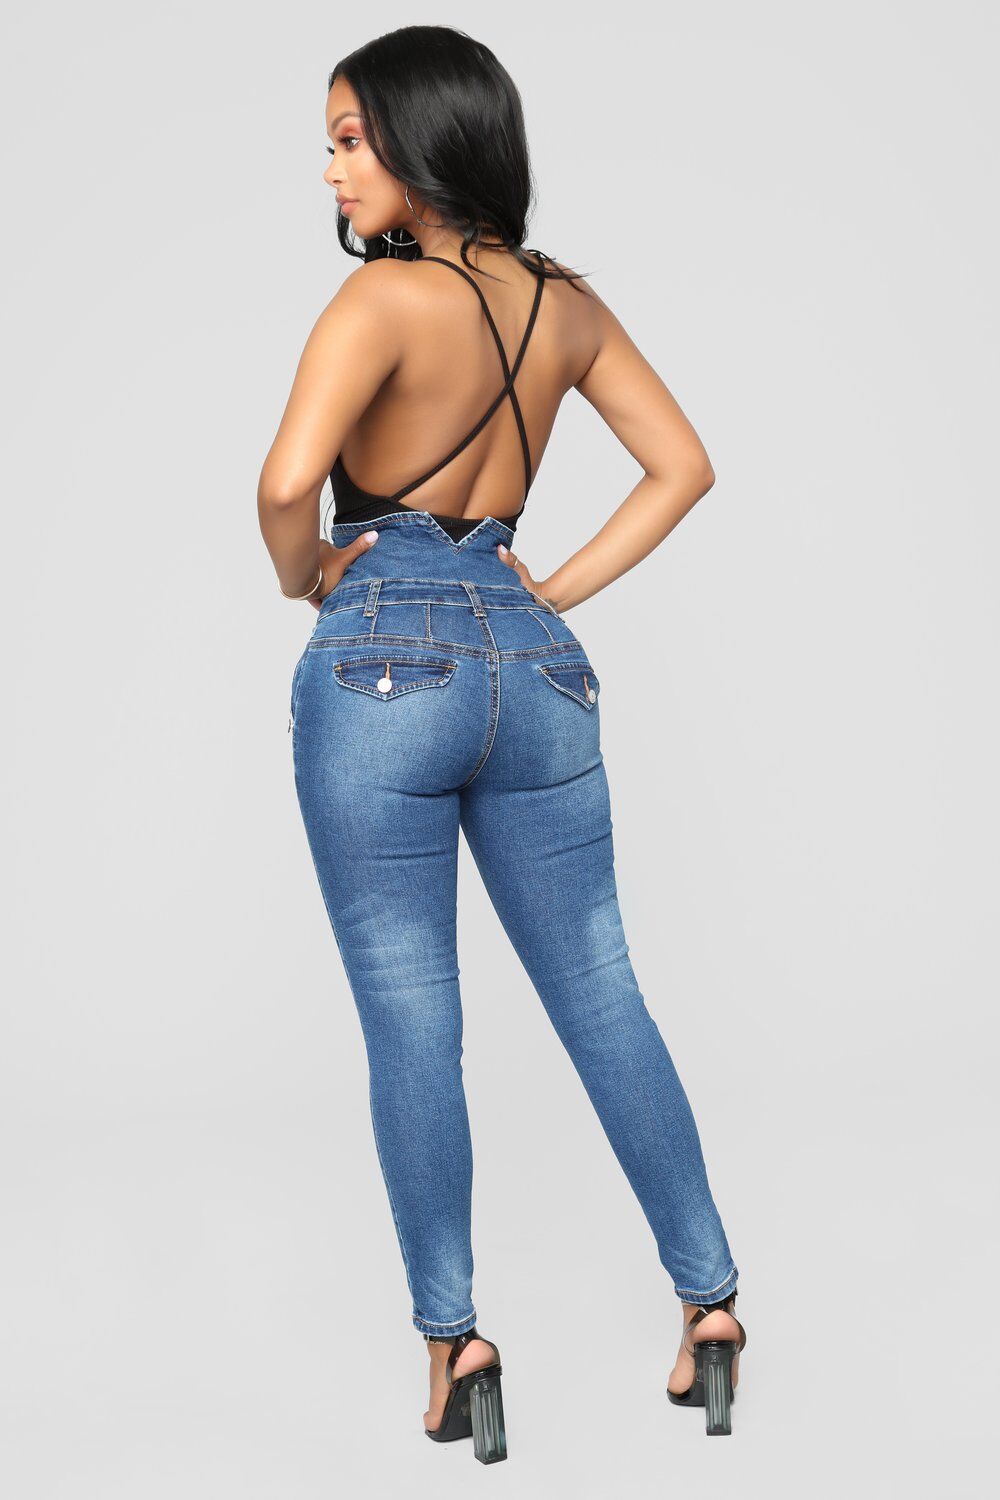 SZ60202 stretch skinny jeans for women